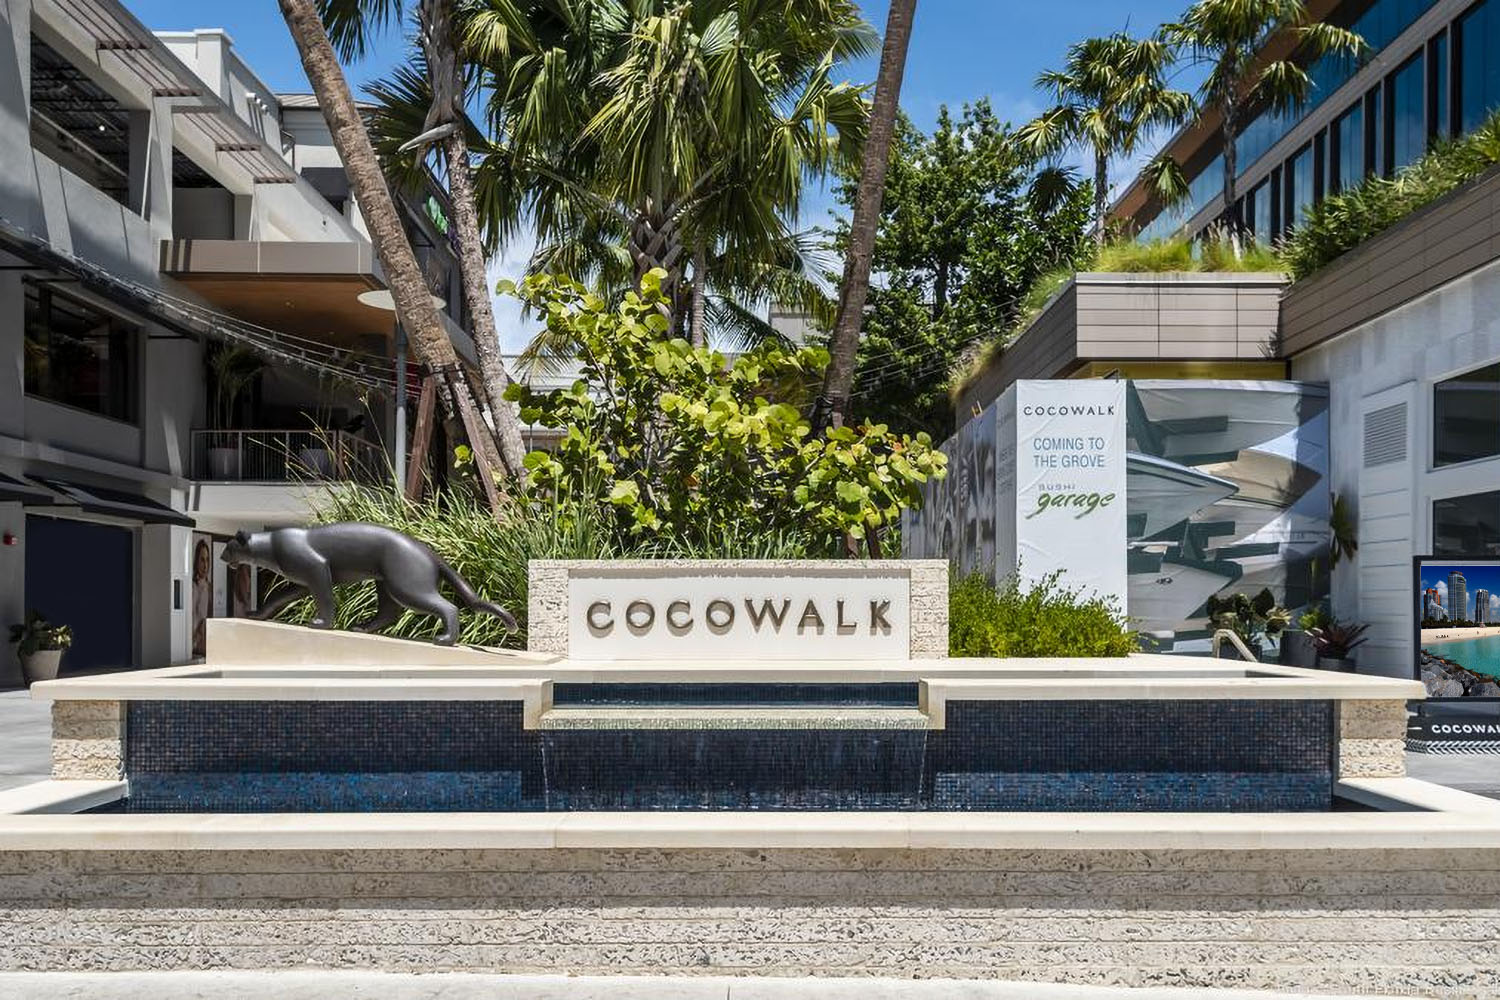 CocoWalk Shopping Mall in Coconut Grove, Miami